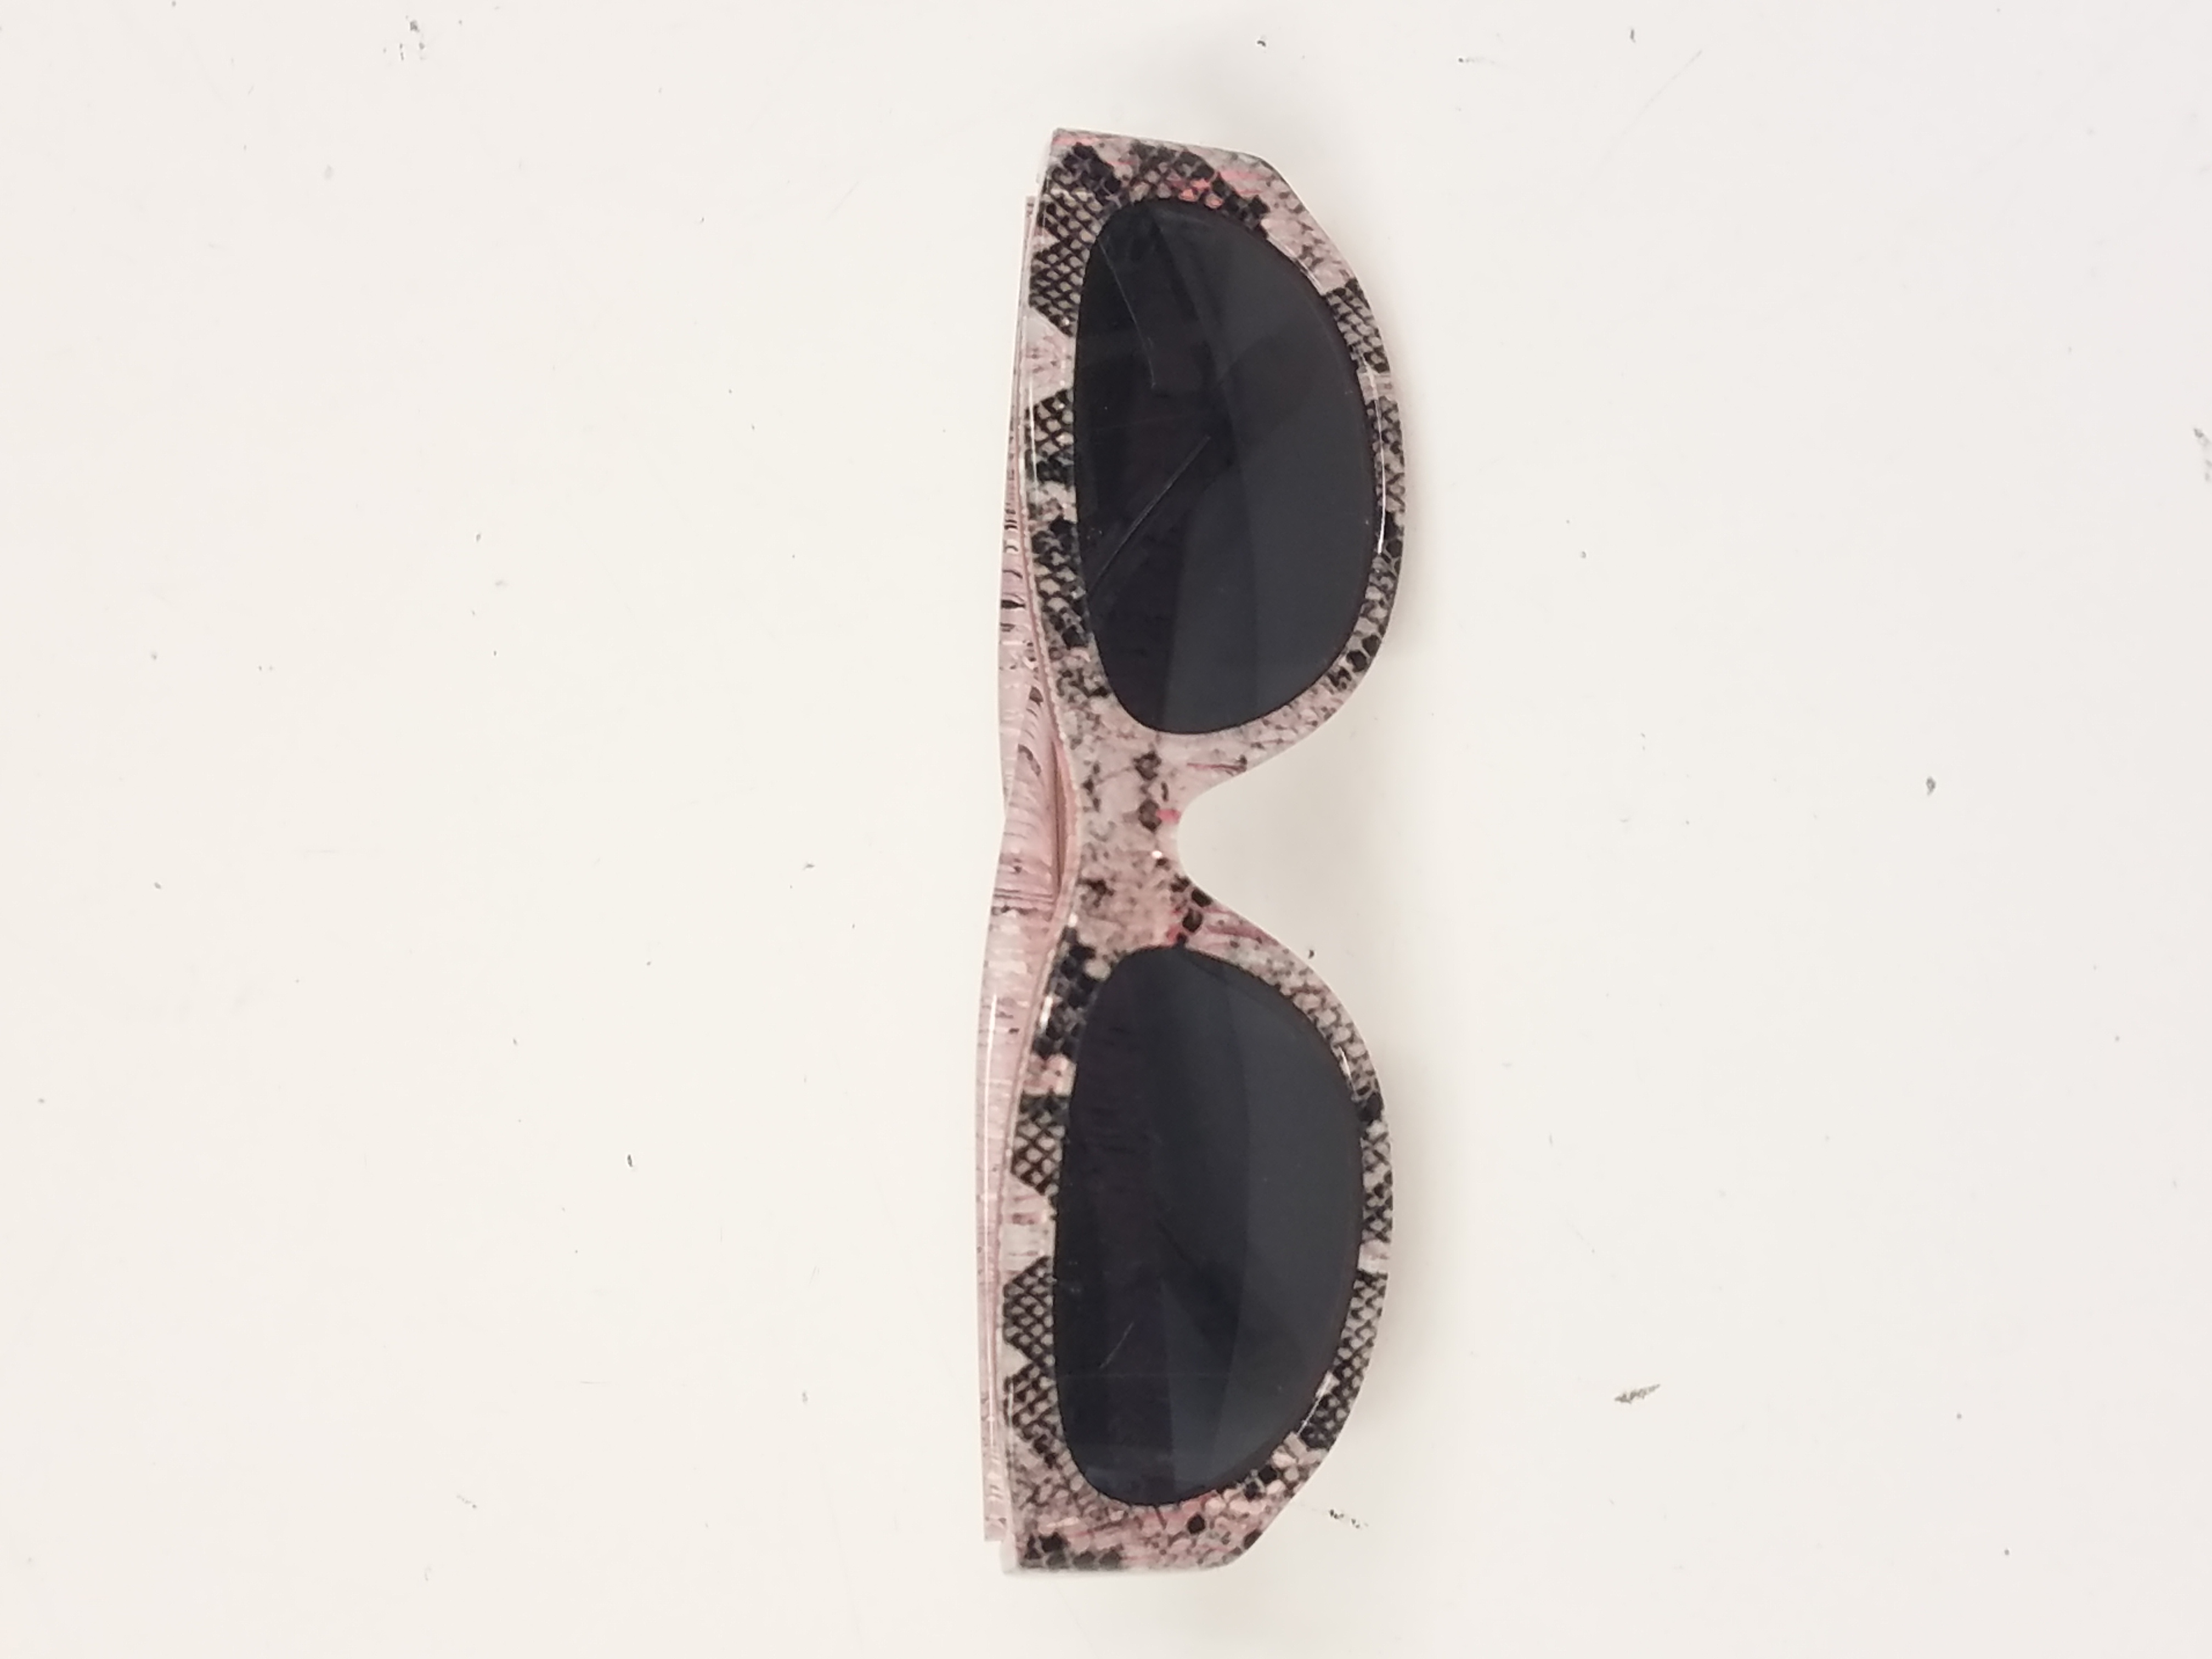 Louis vuitton sunglasses, black - Gem